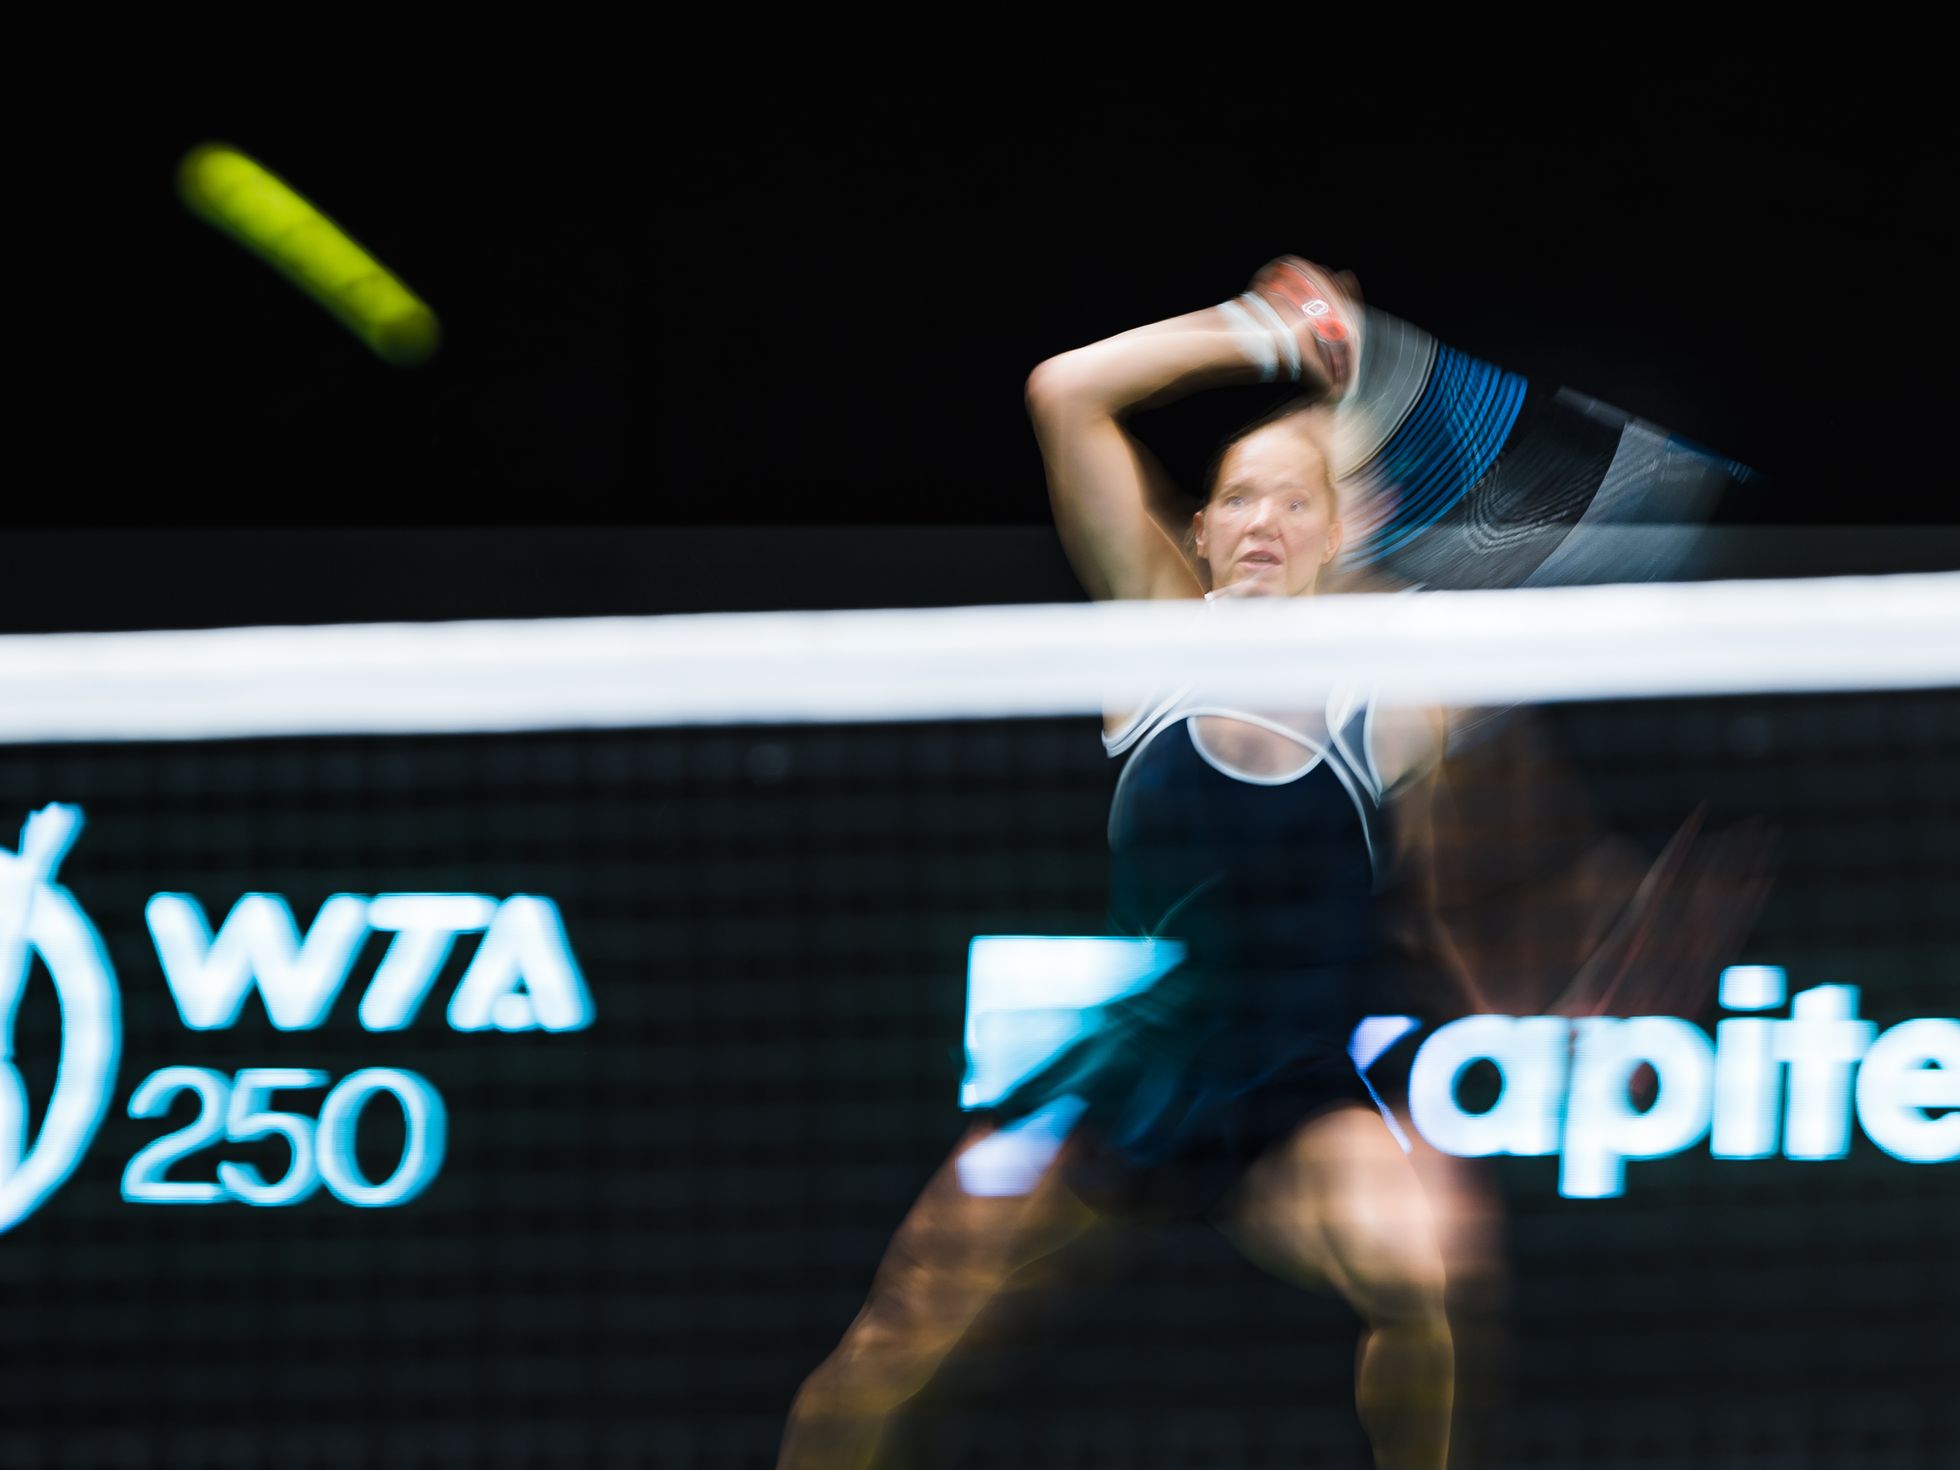 Sinimustvalgega võidule.
Kaia Kanepi võitis Tallinnas koduse WTA turniiri esimeses voorus lõunanaaber Jeļena Ostapenkot reketiga, mis pika säriga pildistades kangastus Eesti lipuks.